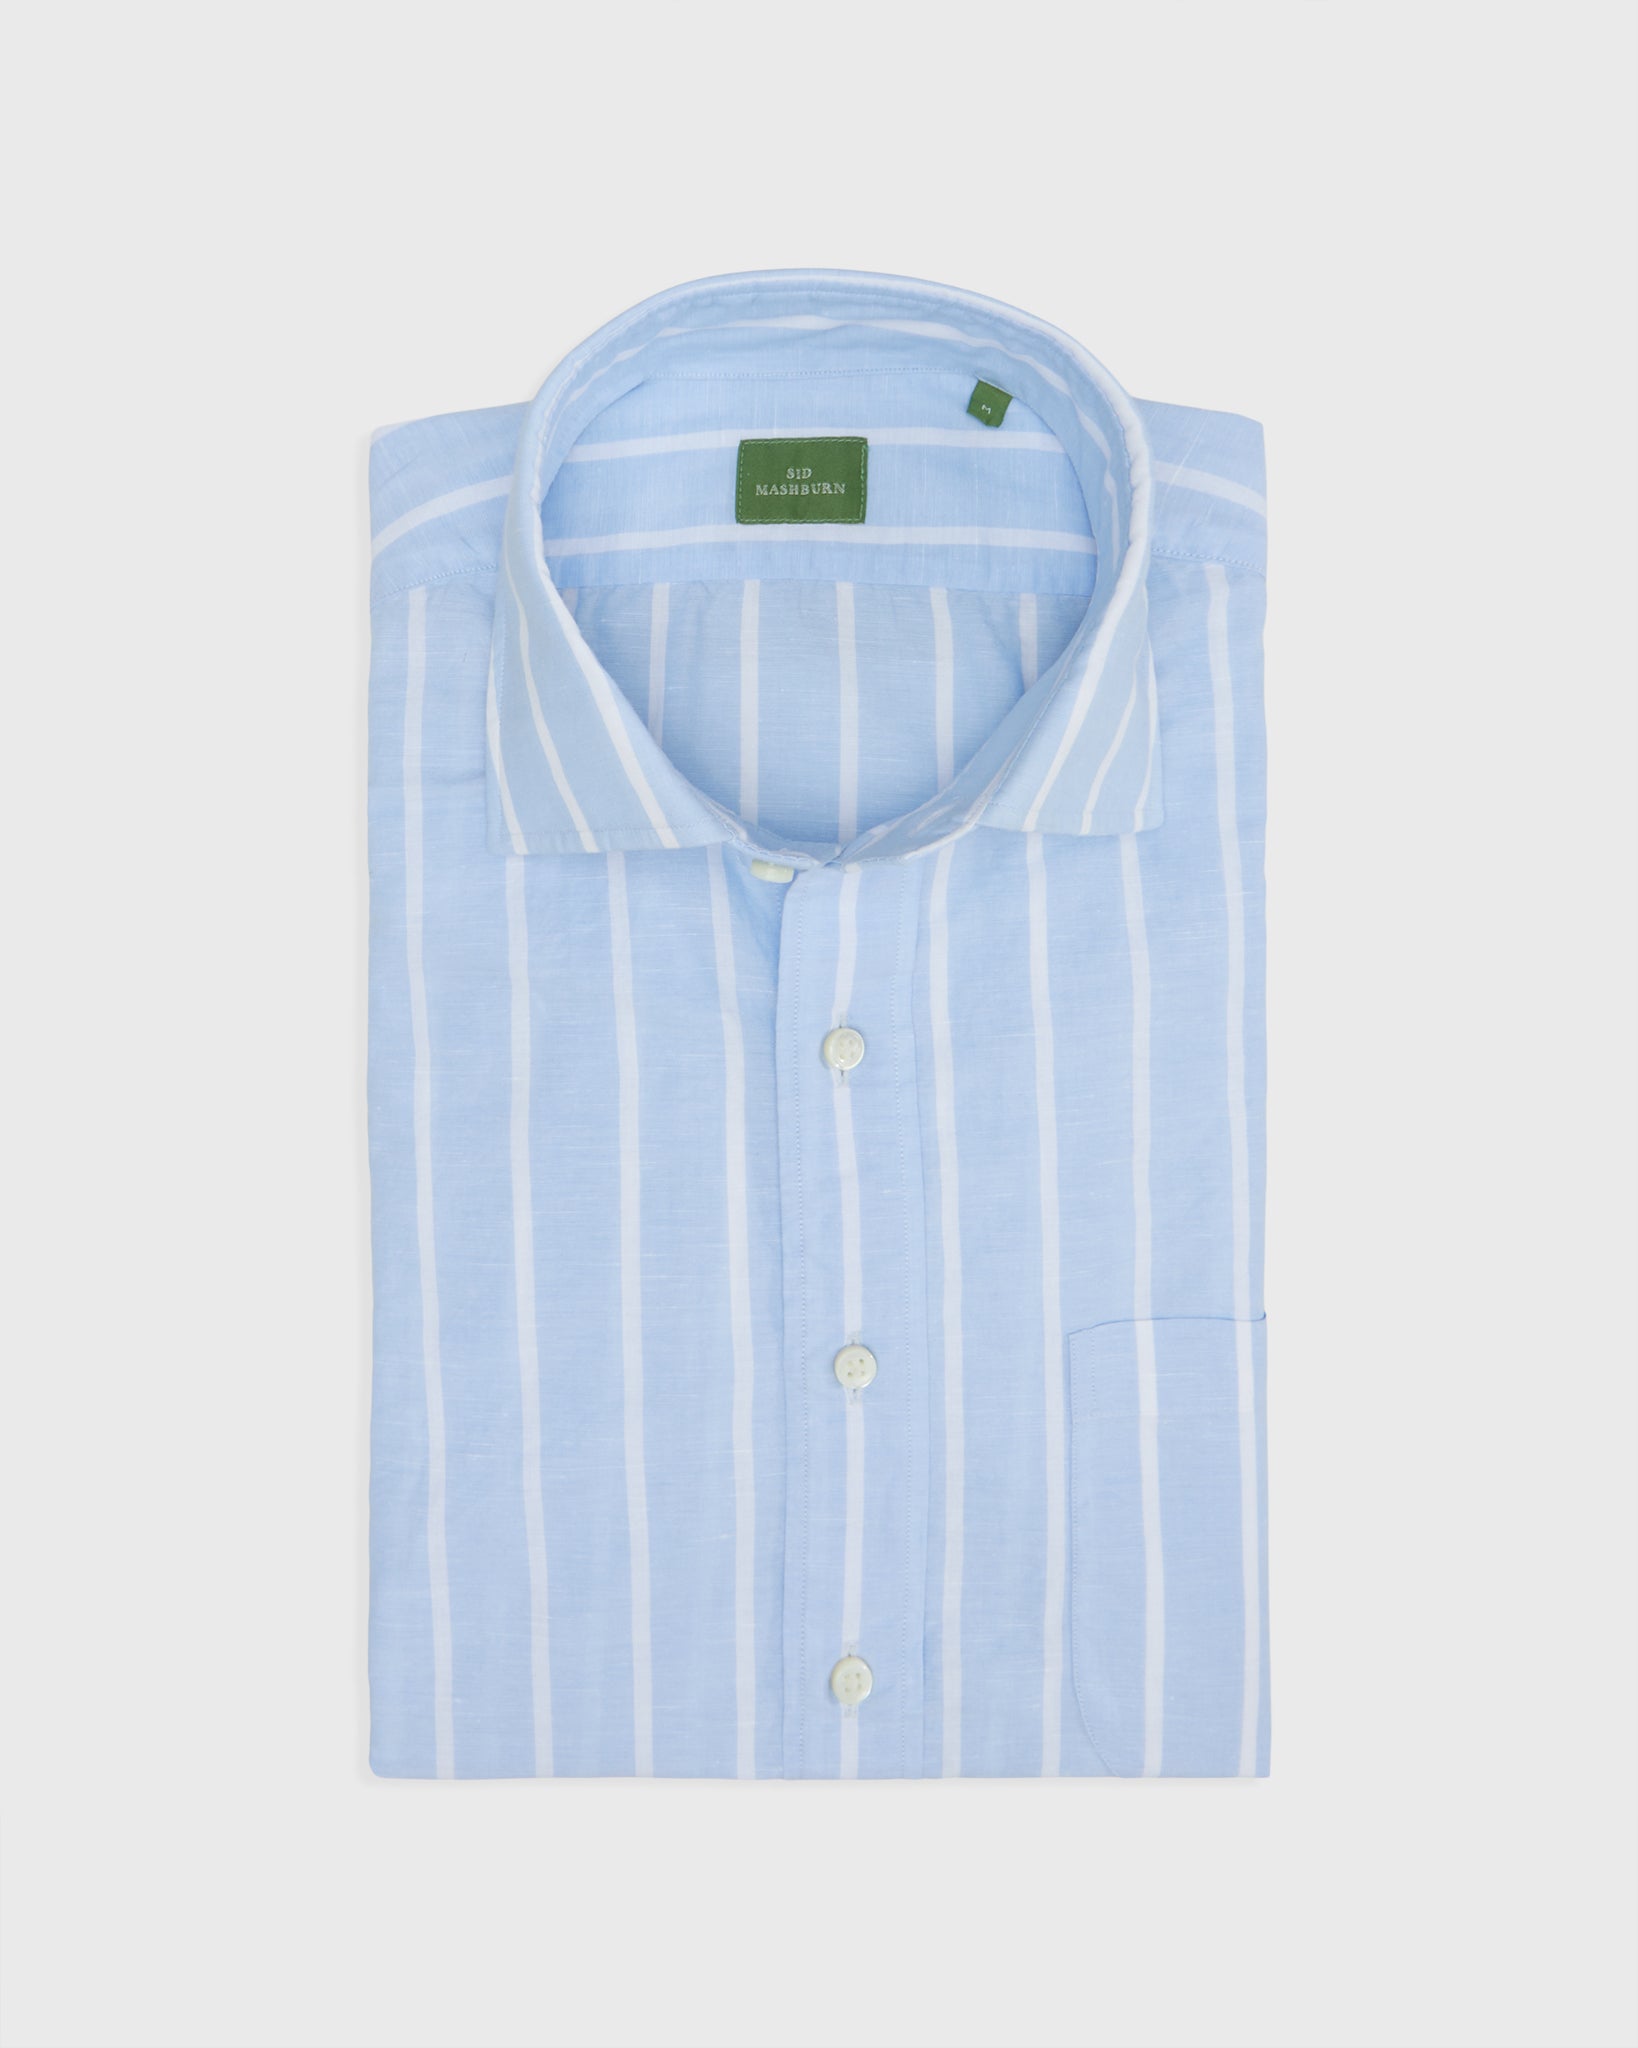 Spread Collar Sport Shirt in Sky/White Wide Stripe Cotolino